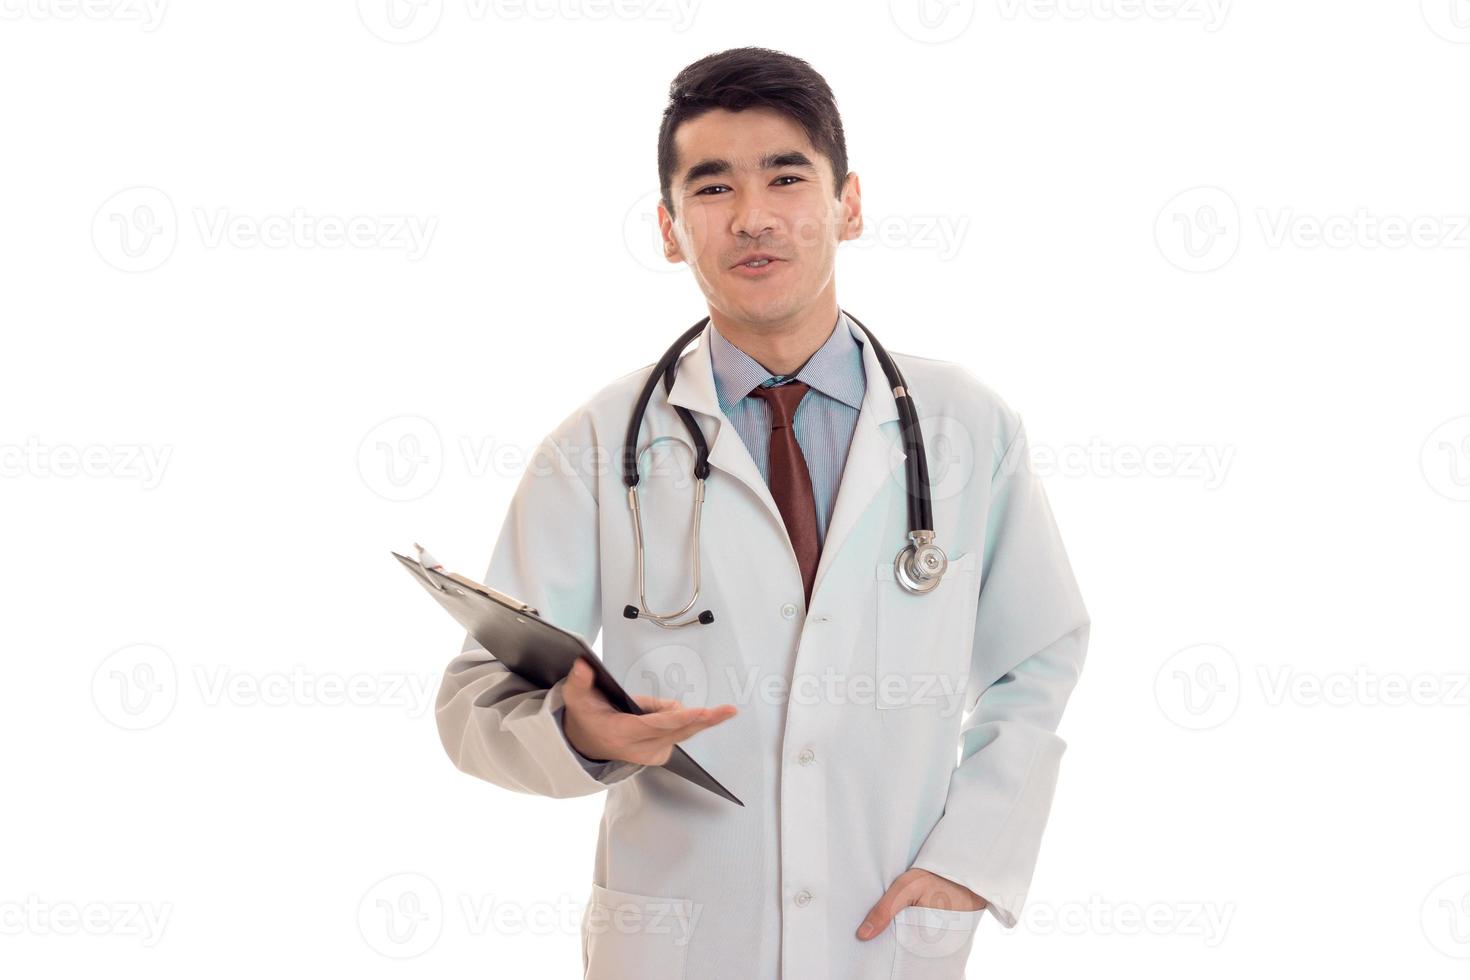 grappig jong brunette Mens dokter in wit uniform met stethoscoop op zoek Bij de camera geïsoleerd in studio foto